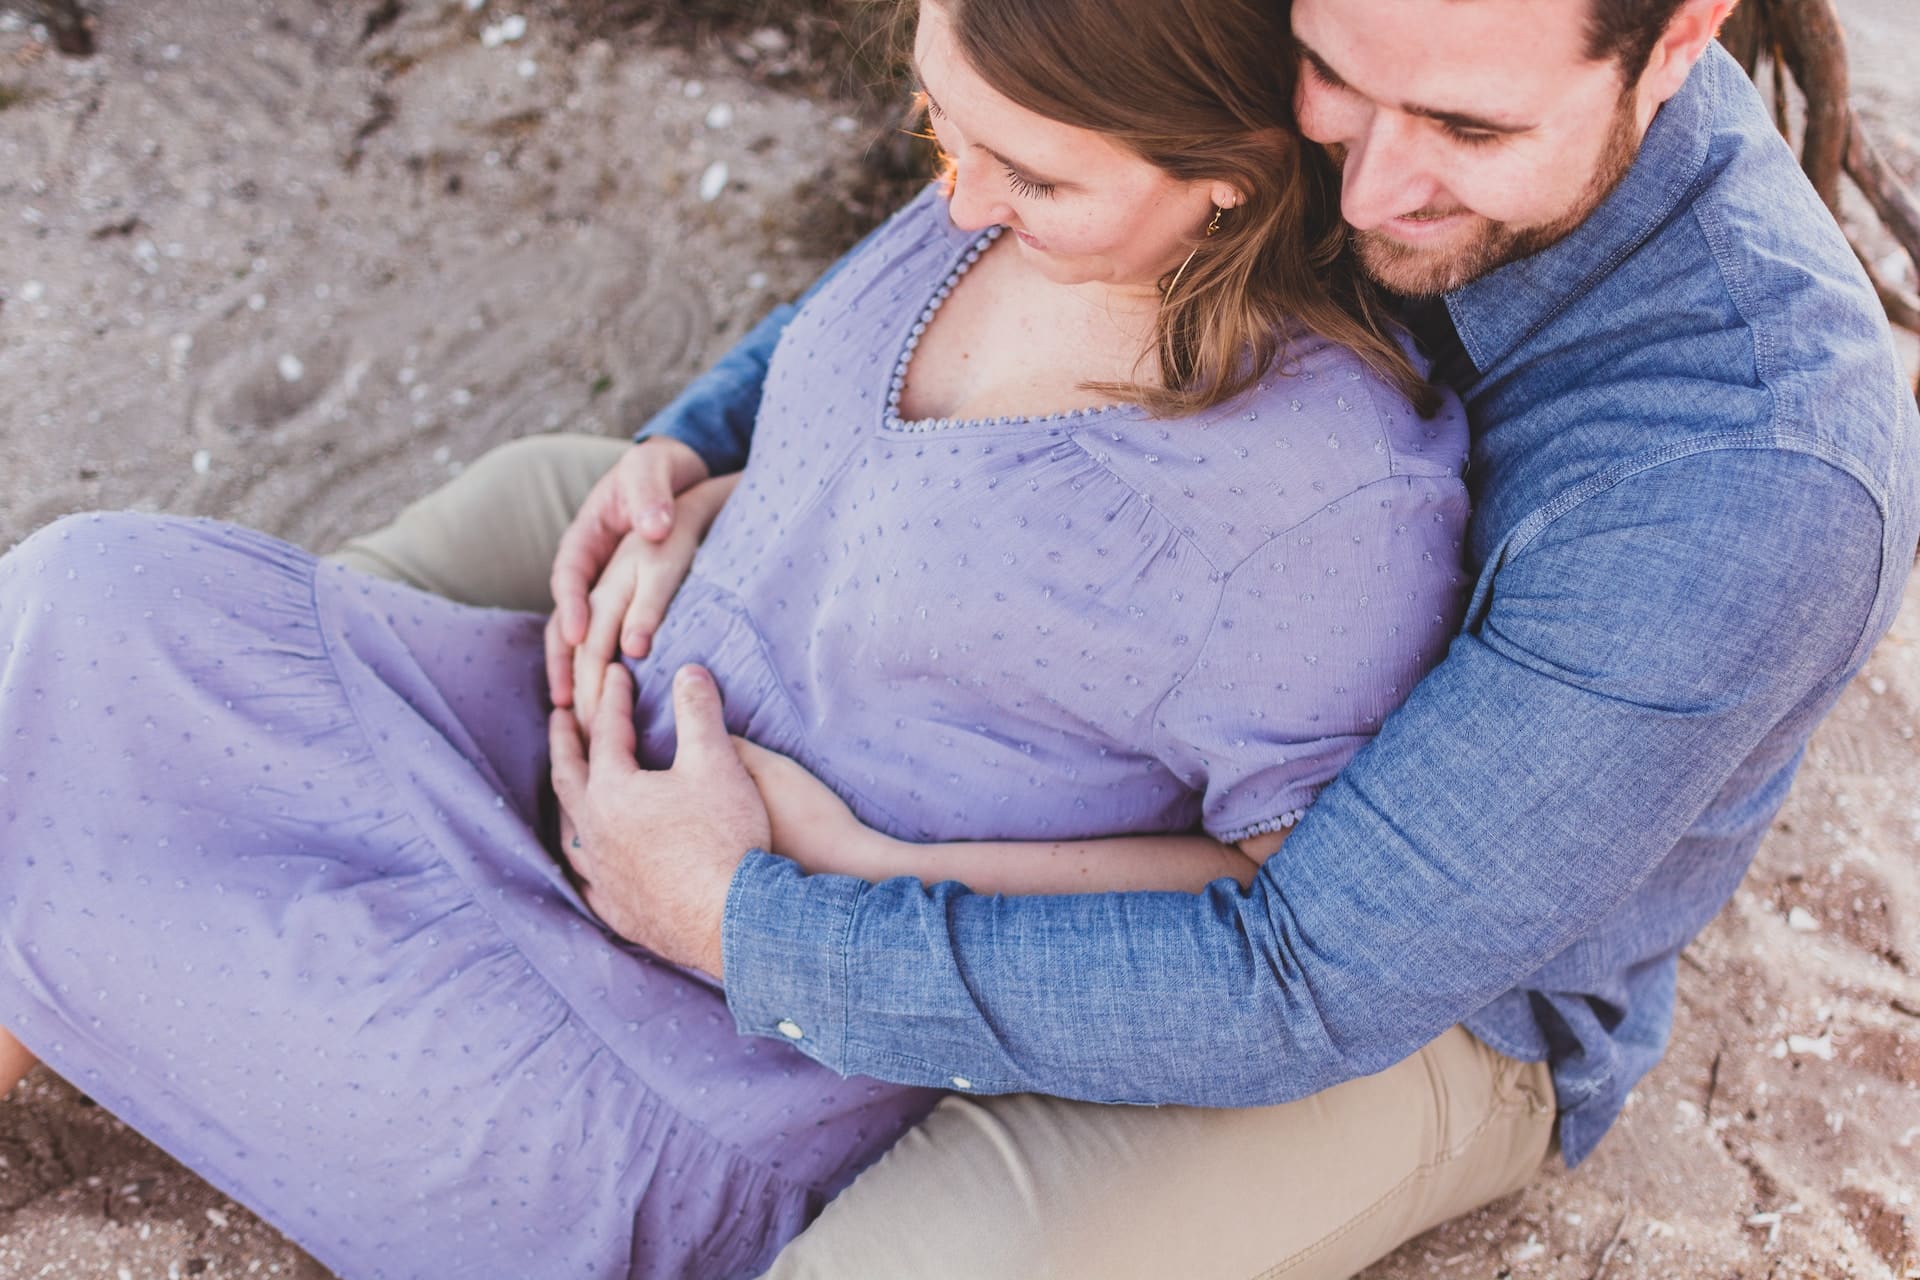 Präeklampsie: Eine Herausforderung in der Schwangerschaft